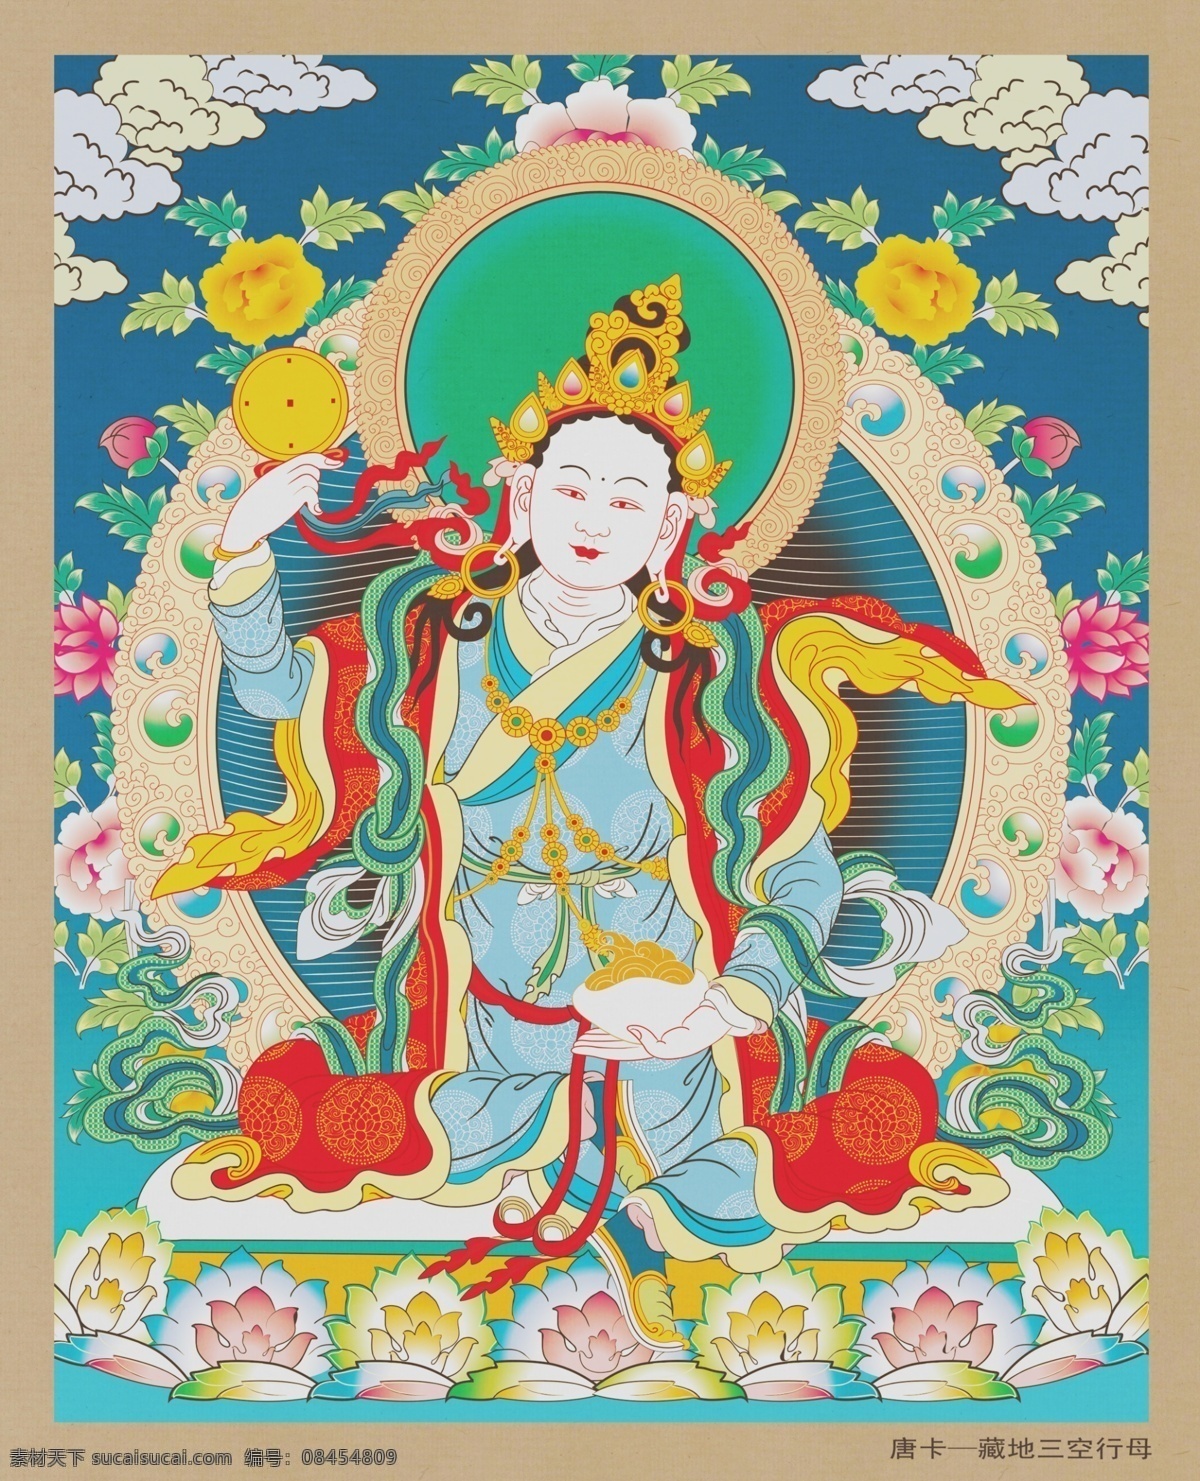 唐卡图片 唐卡 神像 莲花 宗教信仰 文化 观音 神话 宗教 唐卡广告 唐卡海报 藏族文化 藏经 文化艺术 绘画书法